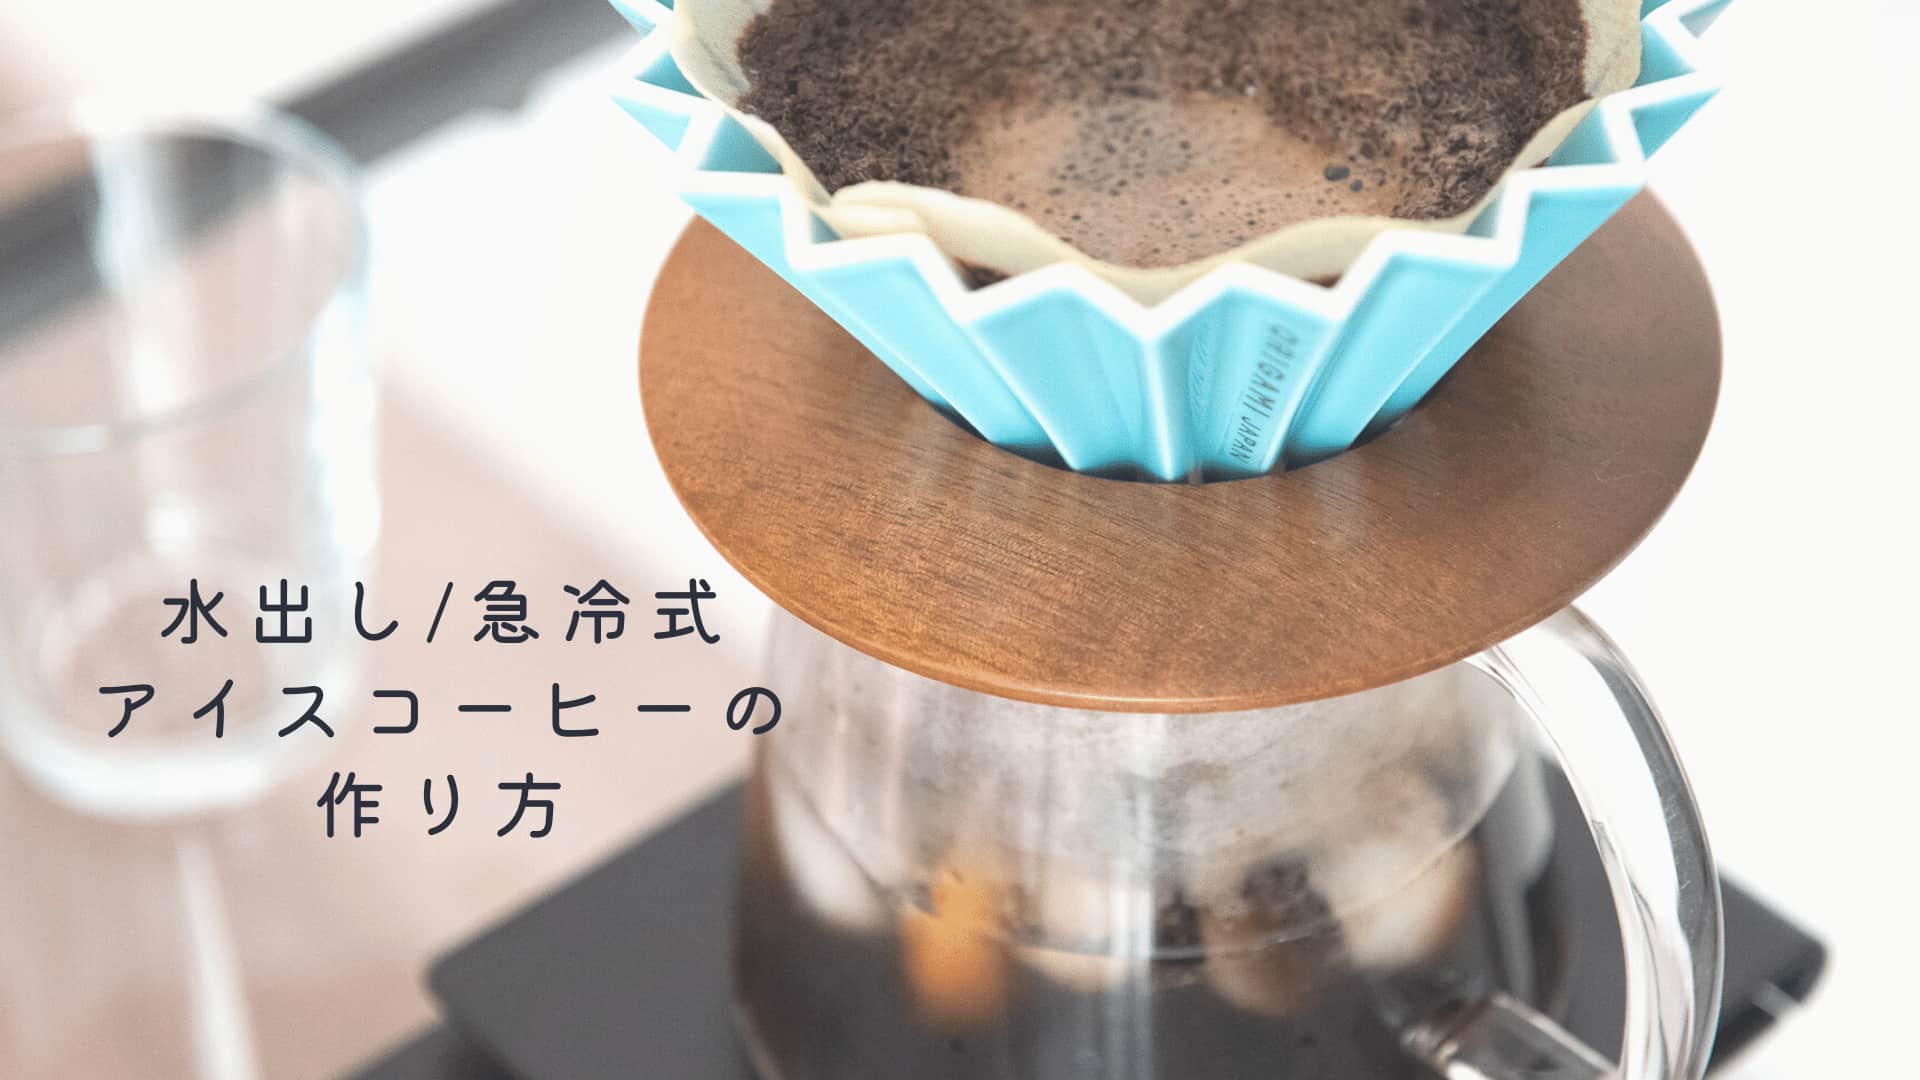 水出し急冷式コーヒー作り方